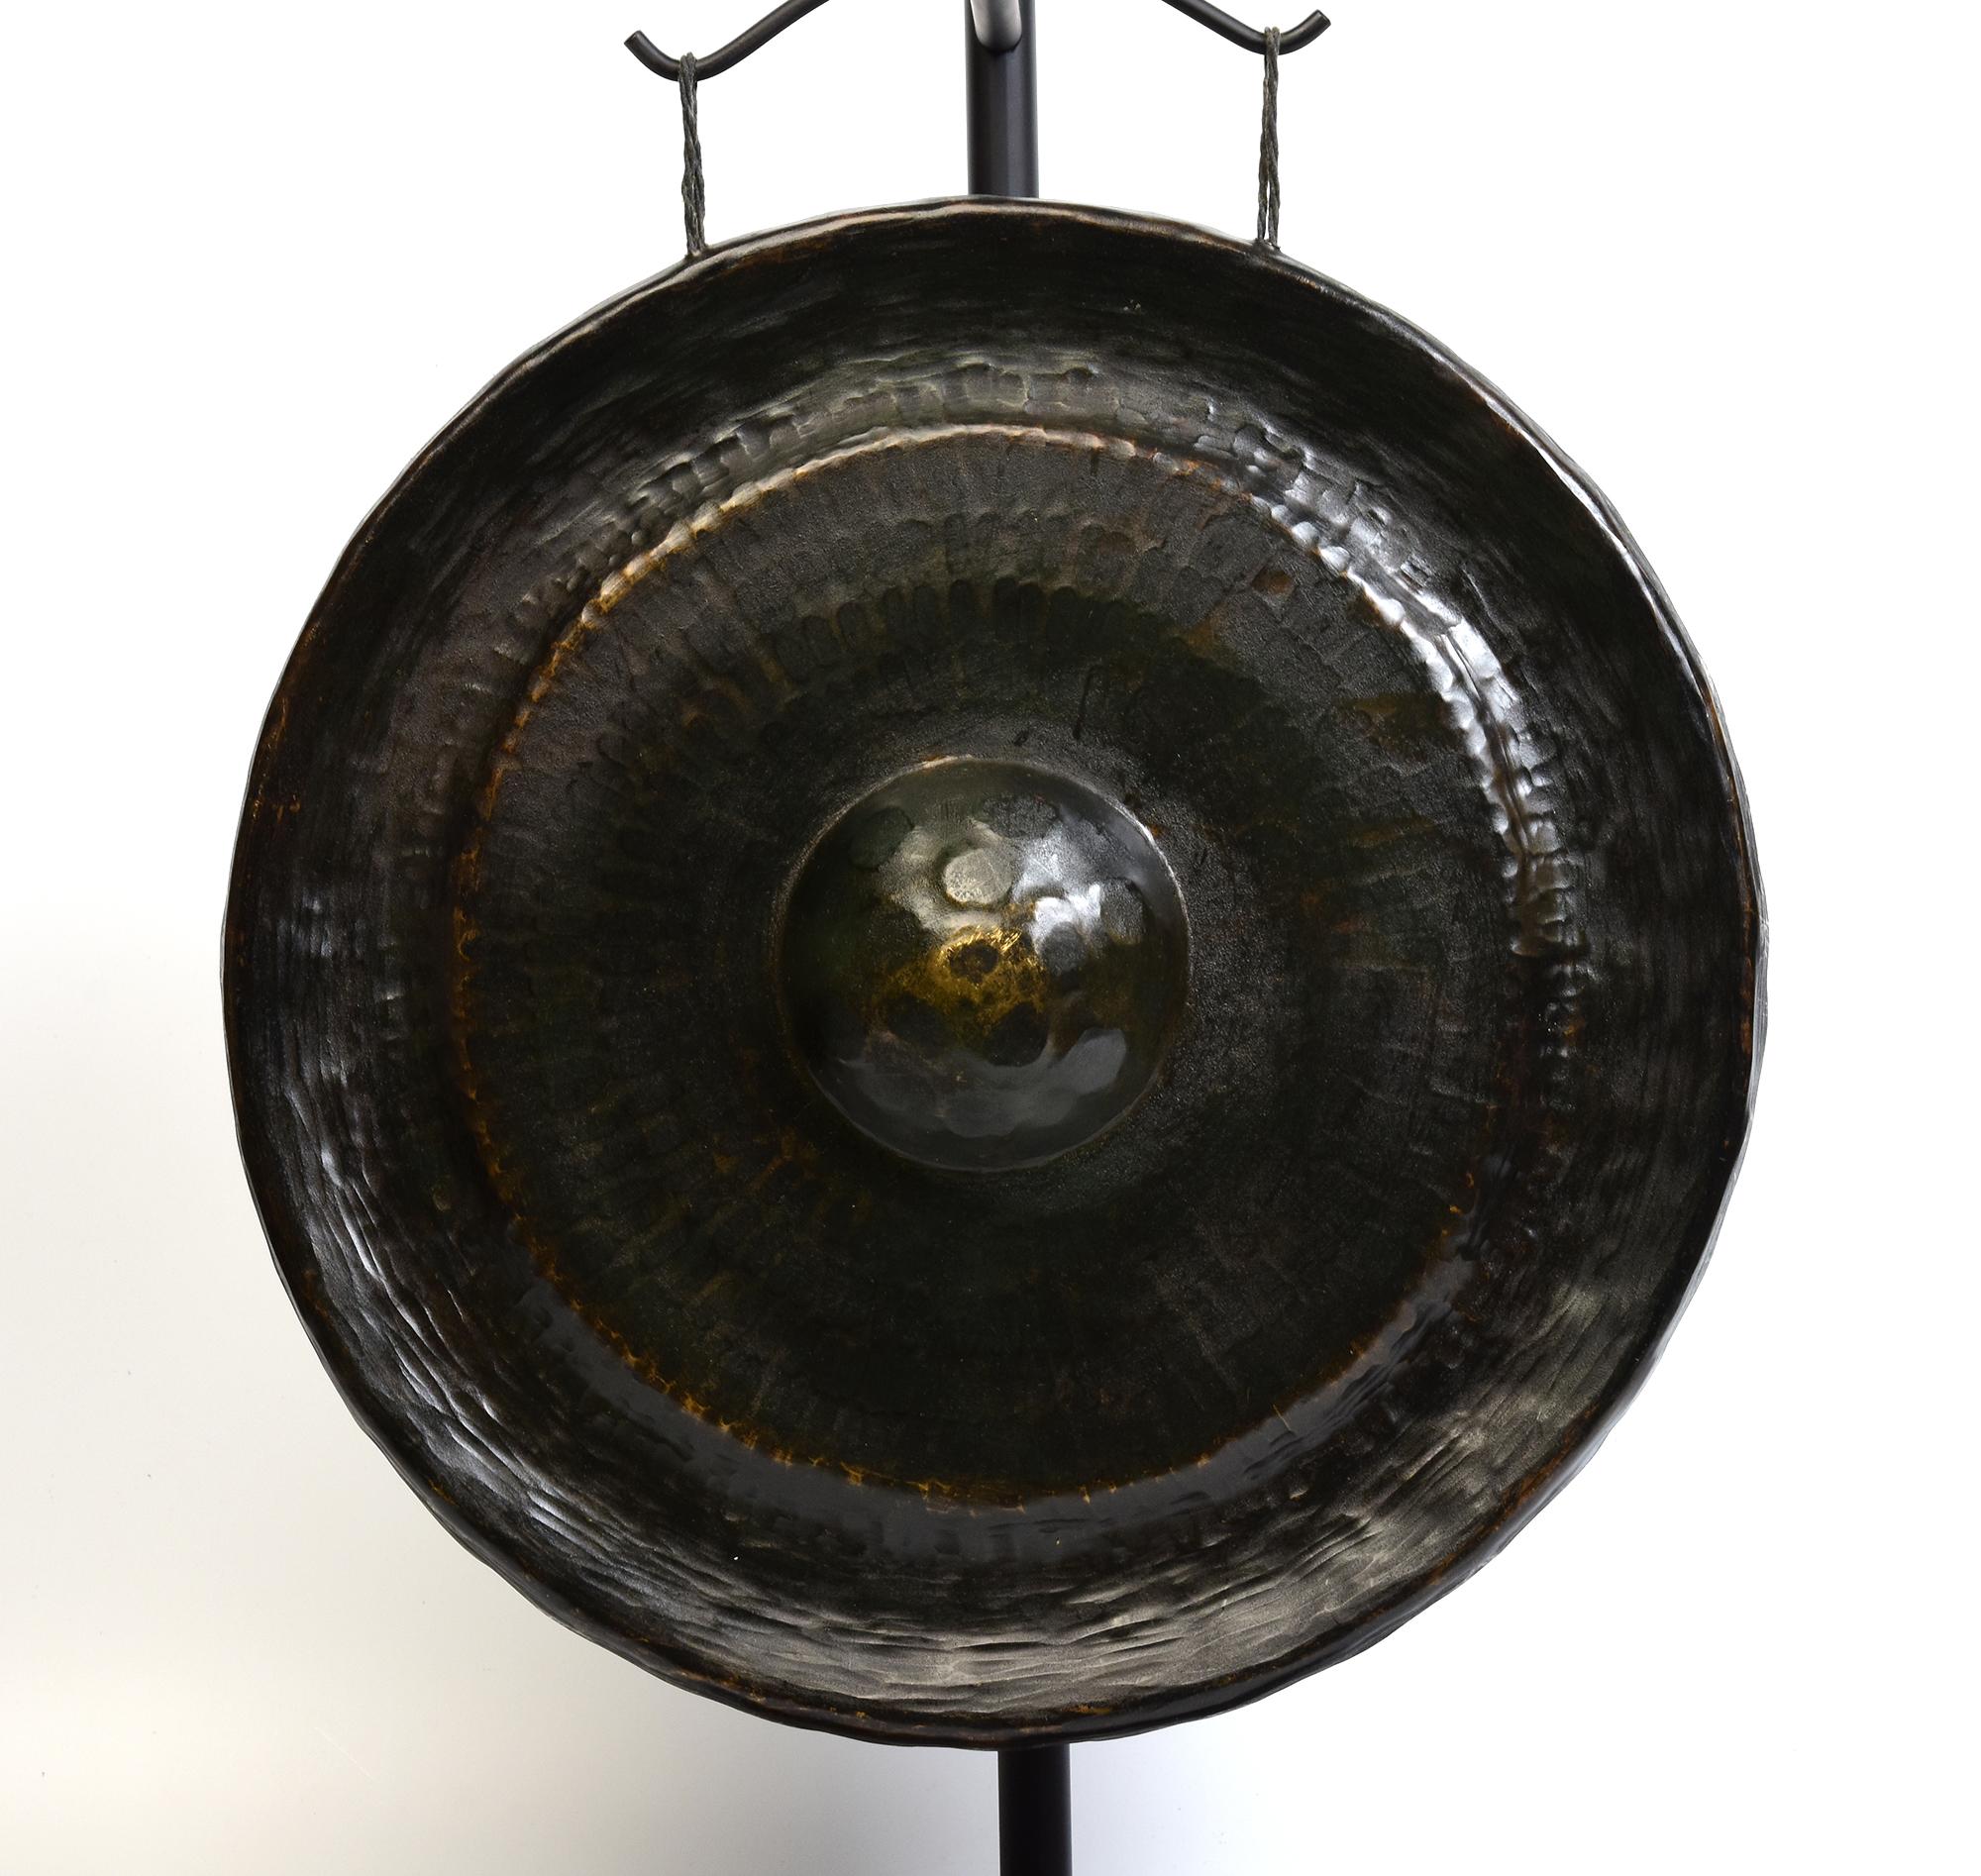 Antiker laotischer Bronzegong, eine Art laotisches Musikinstrument, das einen lauten und sonoren Klang erzeugt. Der Gongstock ist im Lieferumfang enthalten.

Alter: Laos, 19. Jahrhundert
Nur Größe des Gongs: Durchmesser 40 C.M. / Dicke 9.5 C.M.
Höhe